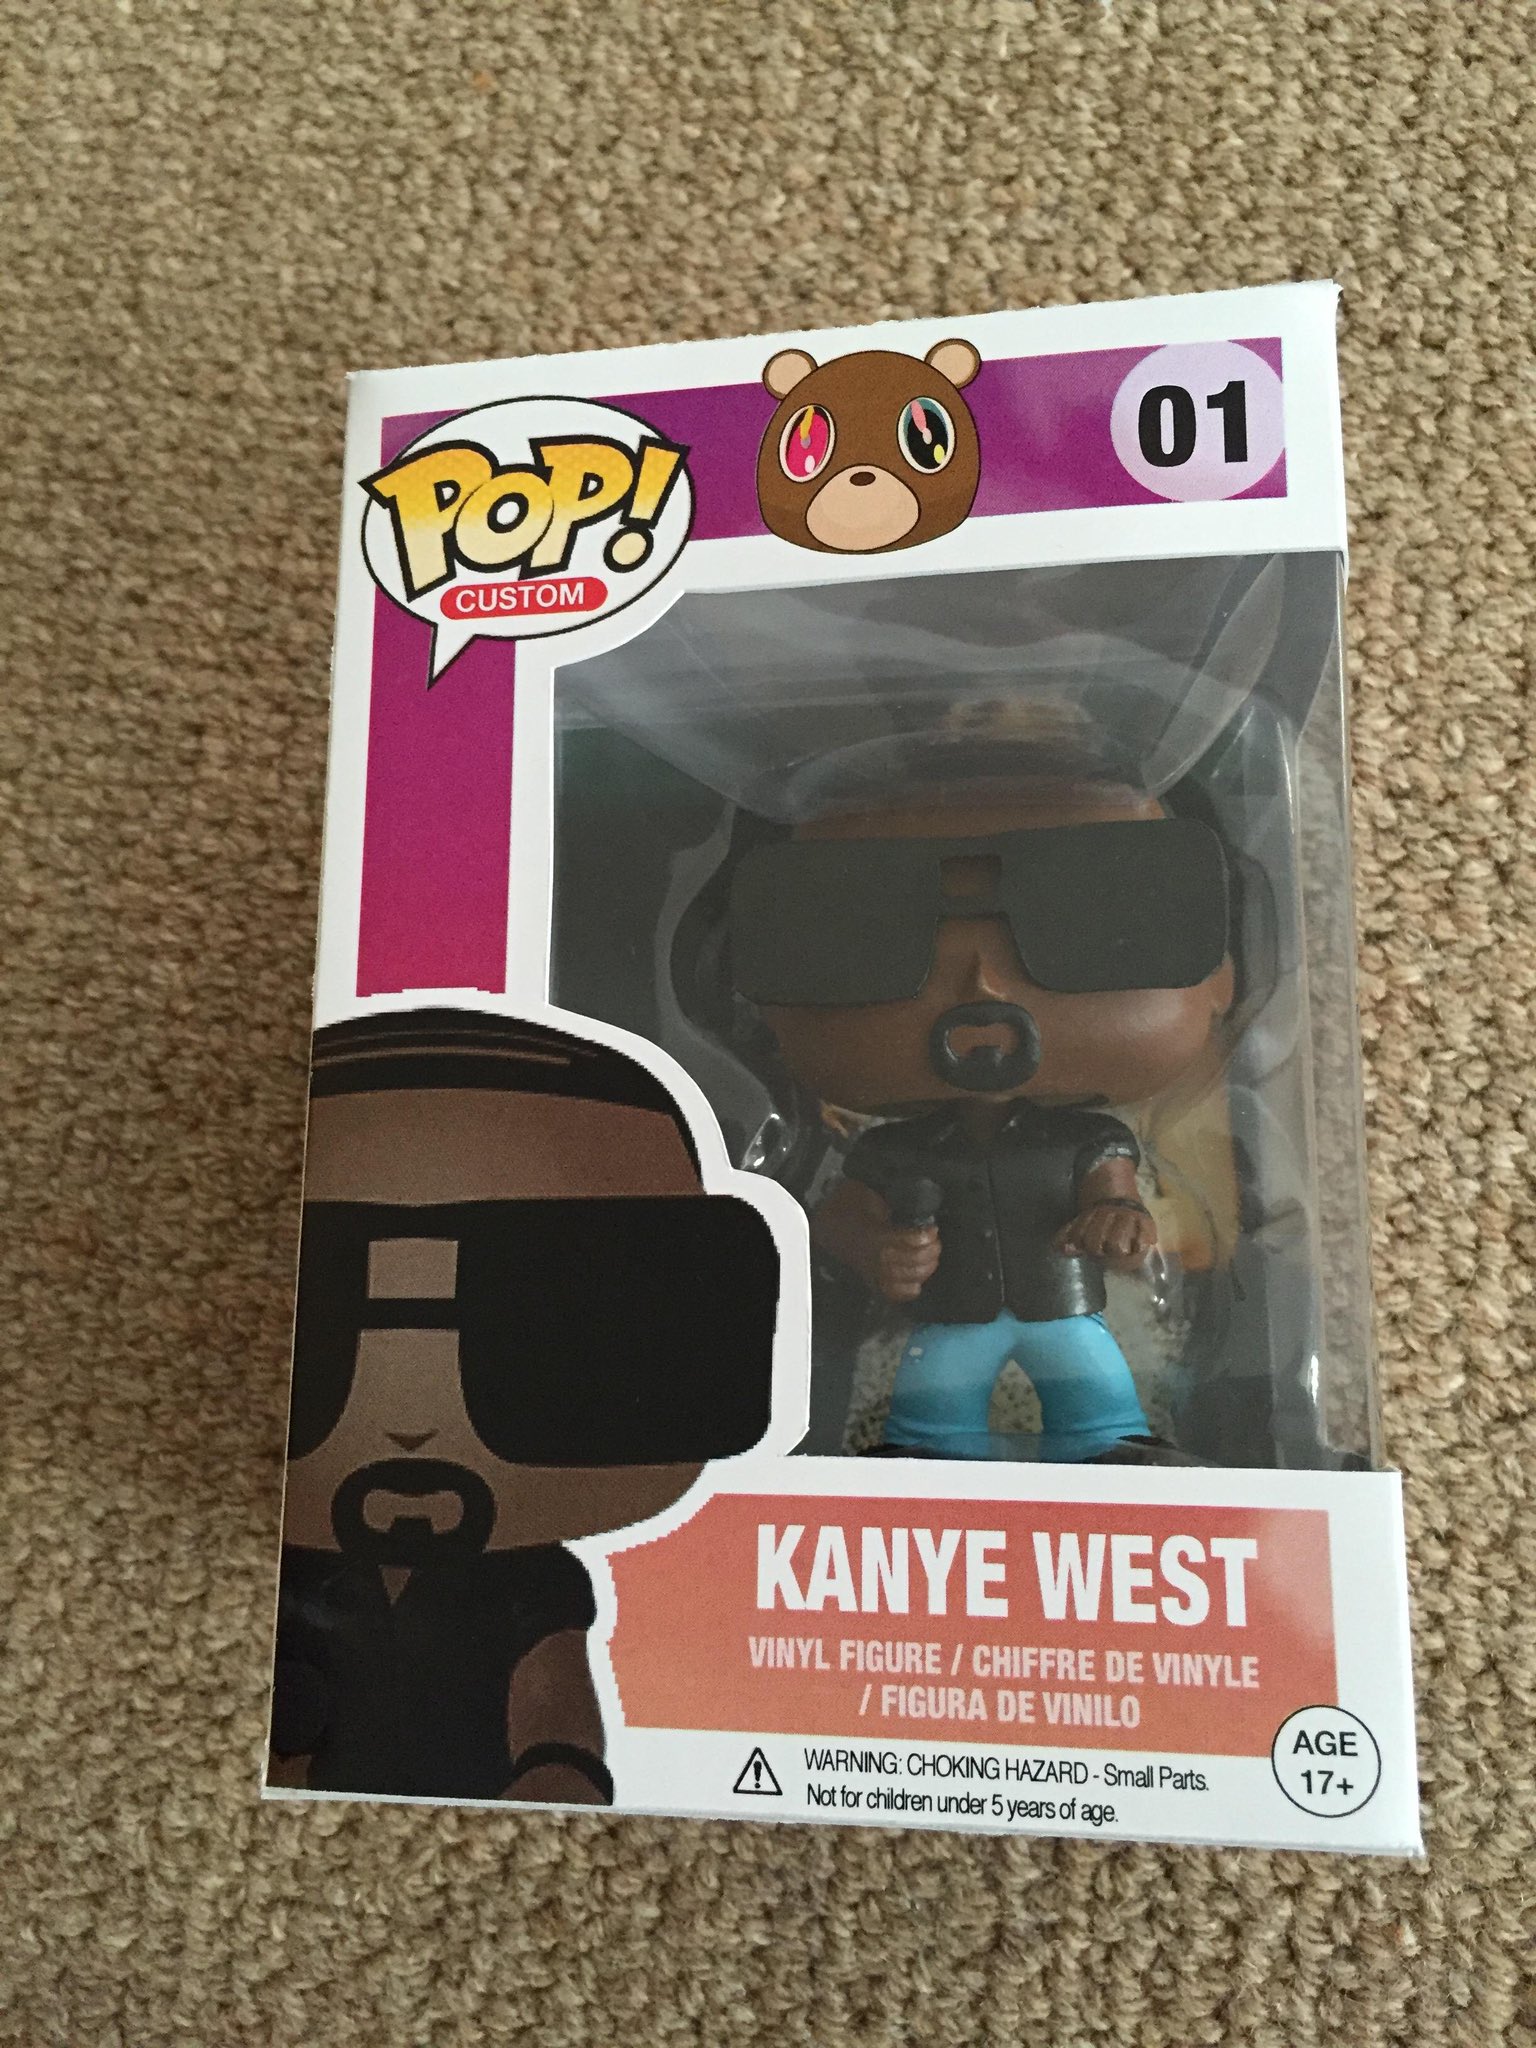 Soak Utænkelig Overskyet Ye Updates (Fan Account) on Twitter: "Kanye West Funko Pops!  https://t.co/qMlGcqF8FM" / Twitter